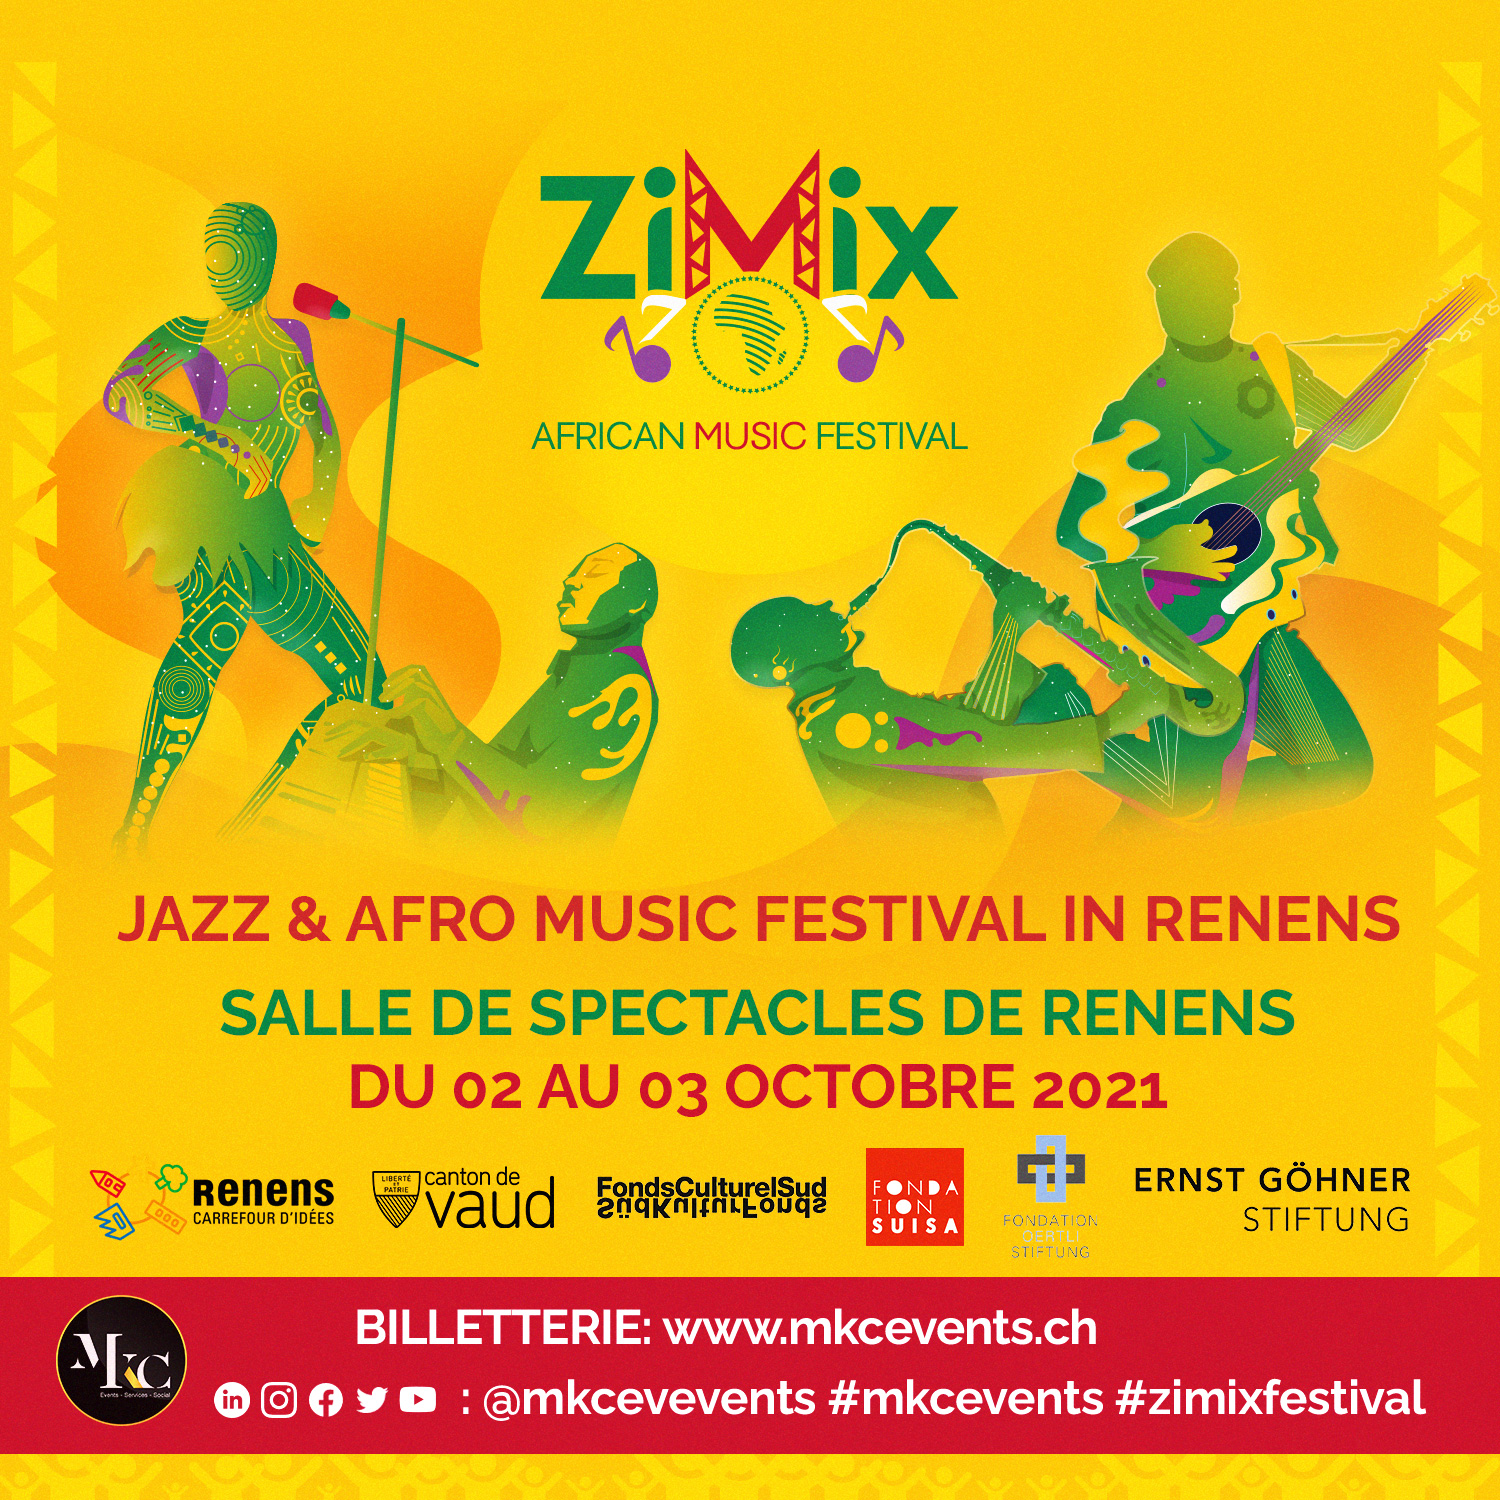 MKC-EVENTS-2021-ZiMix-Whatsapp&Instagram_001